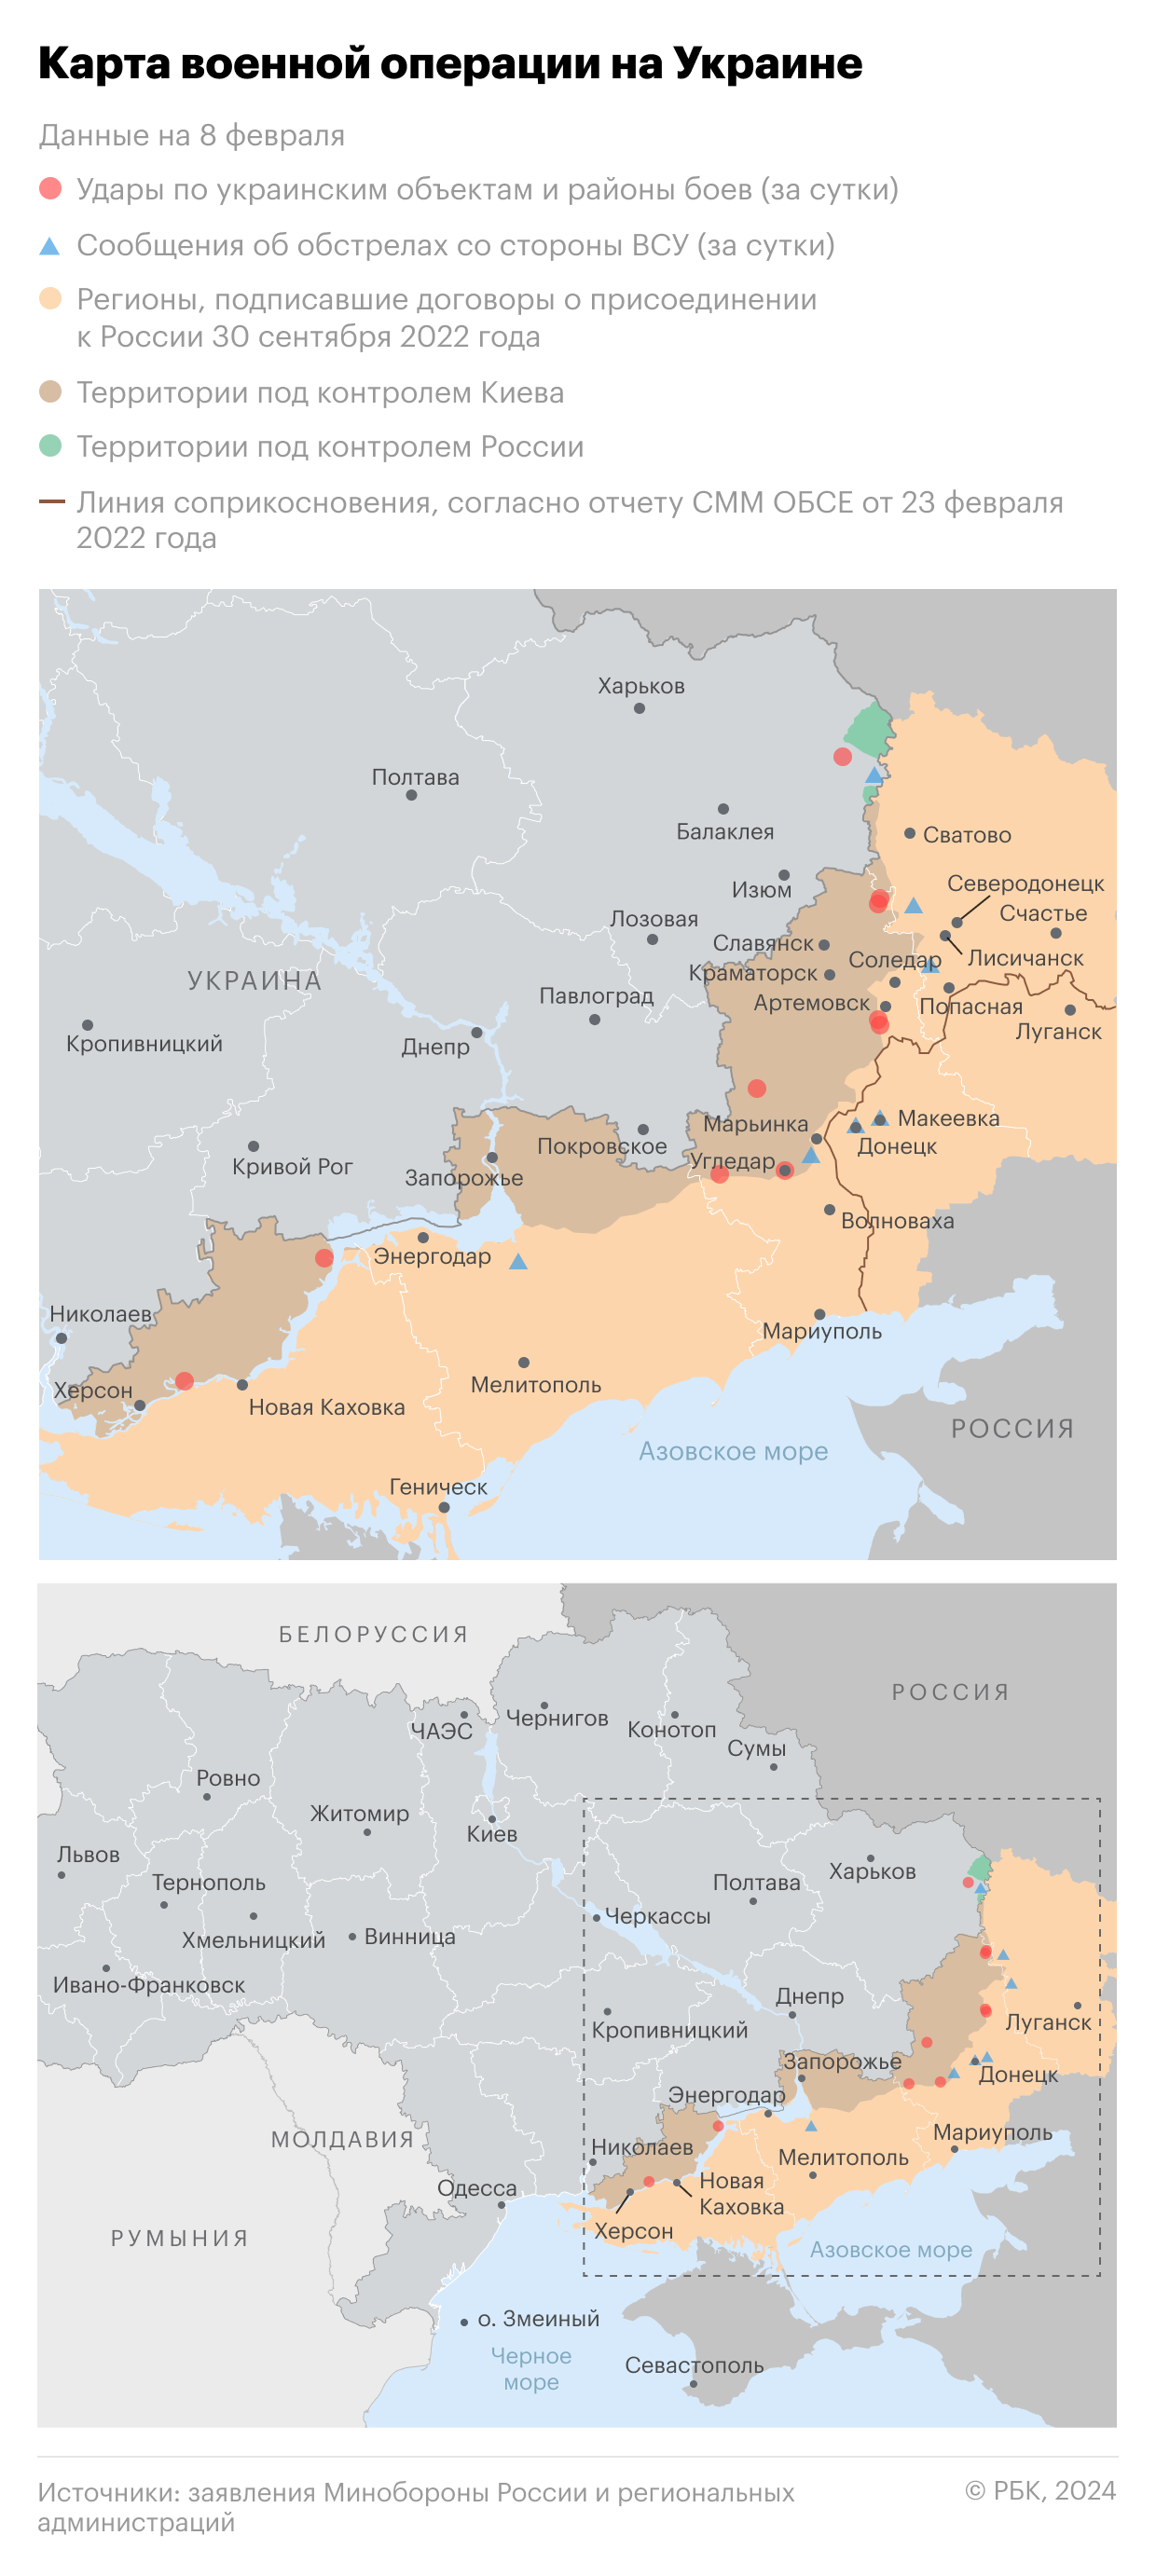 Военная операция на Украине. Карта на 8 февраля